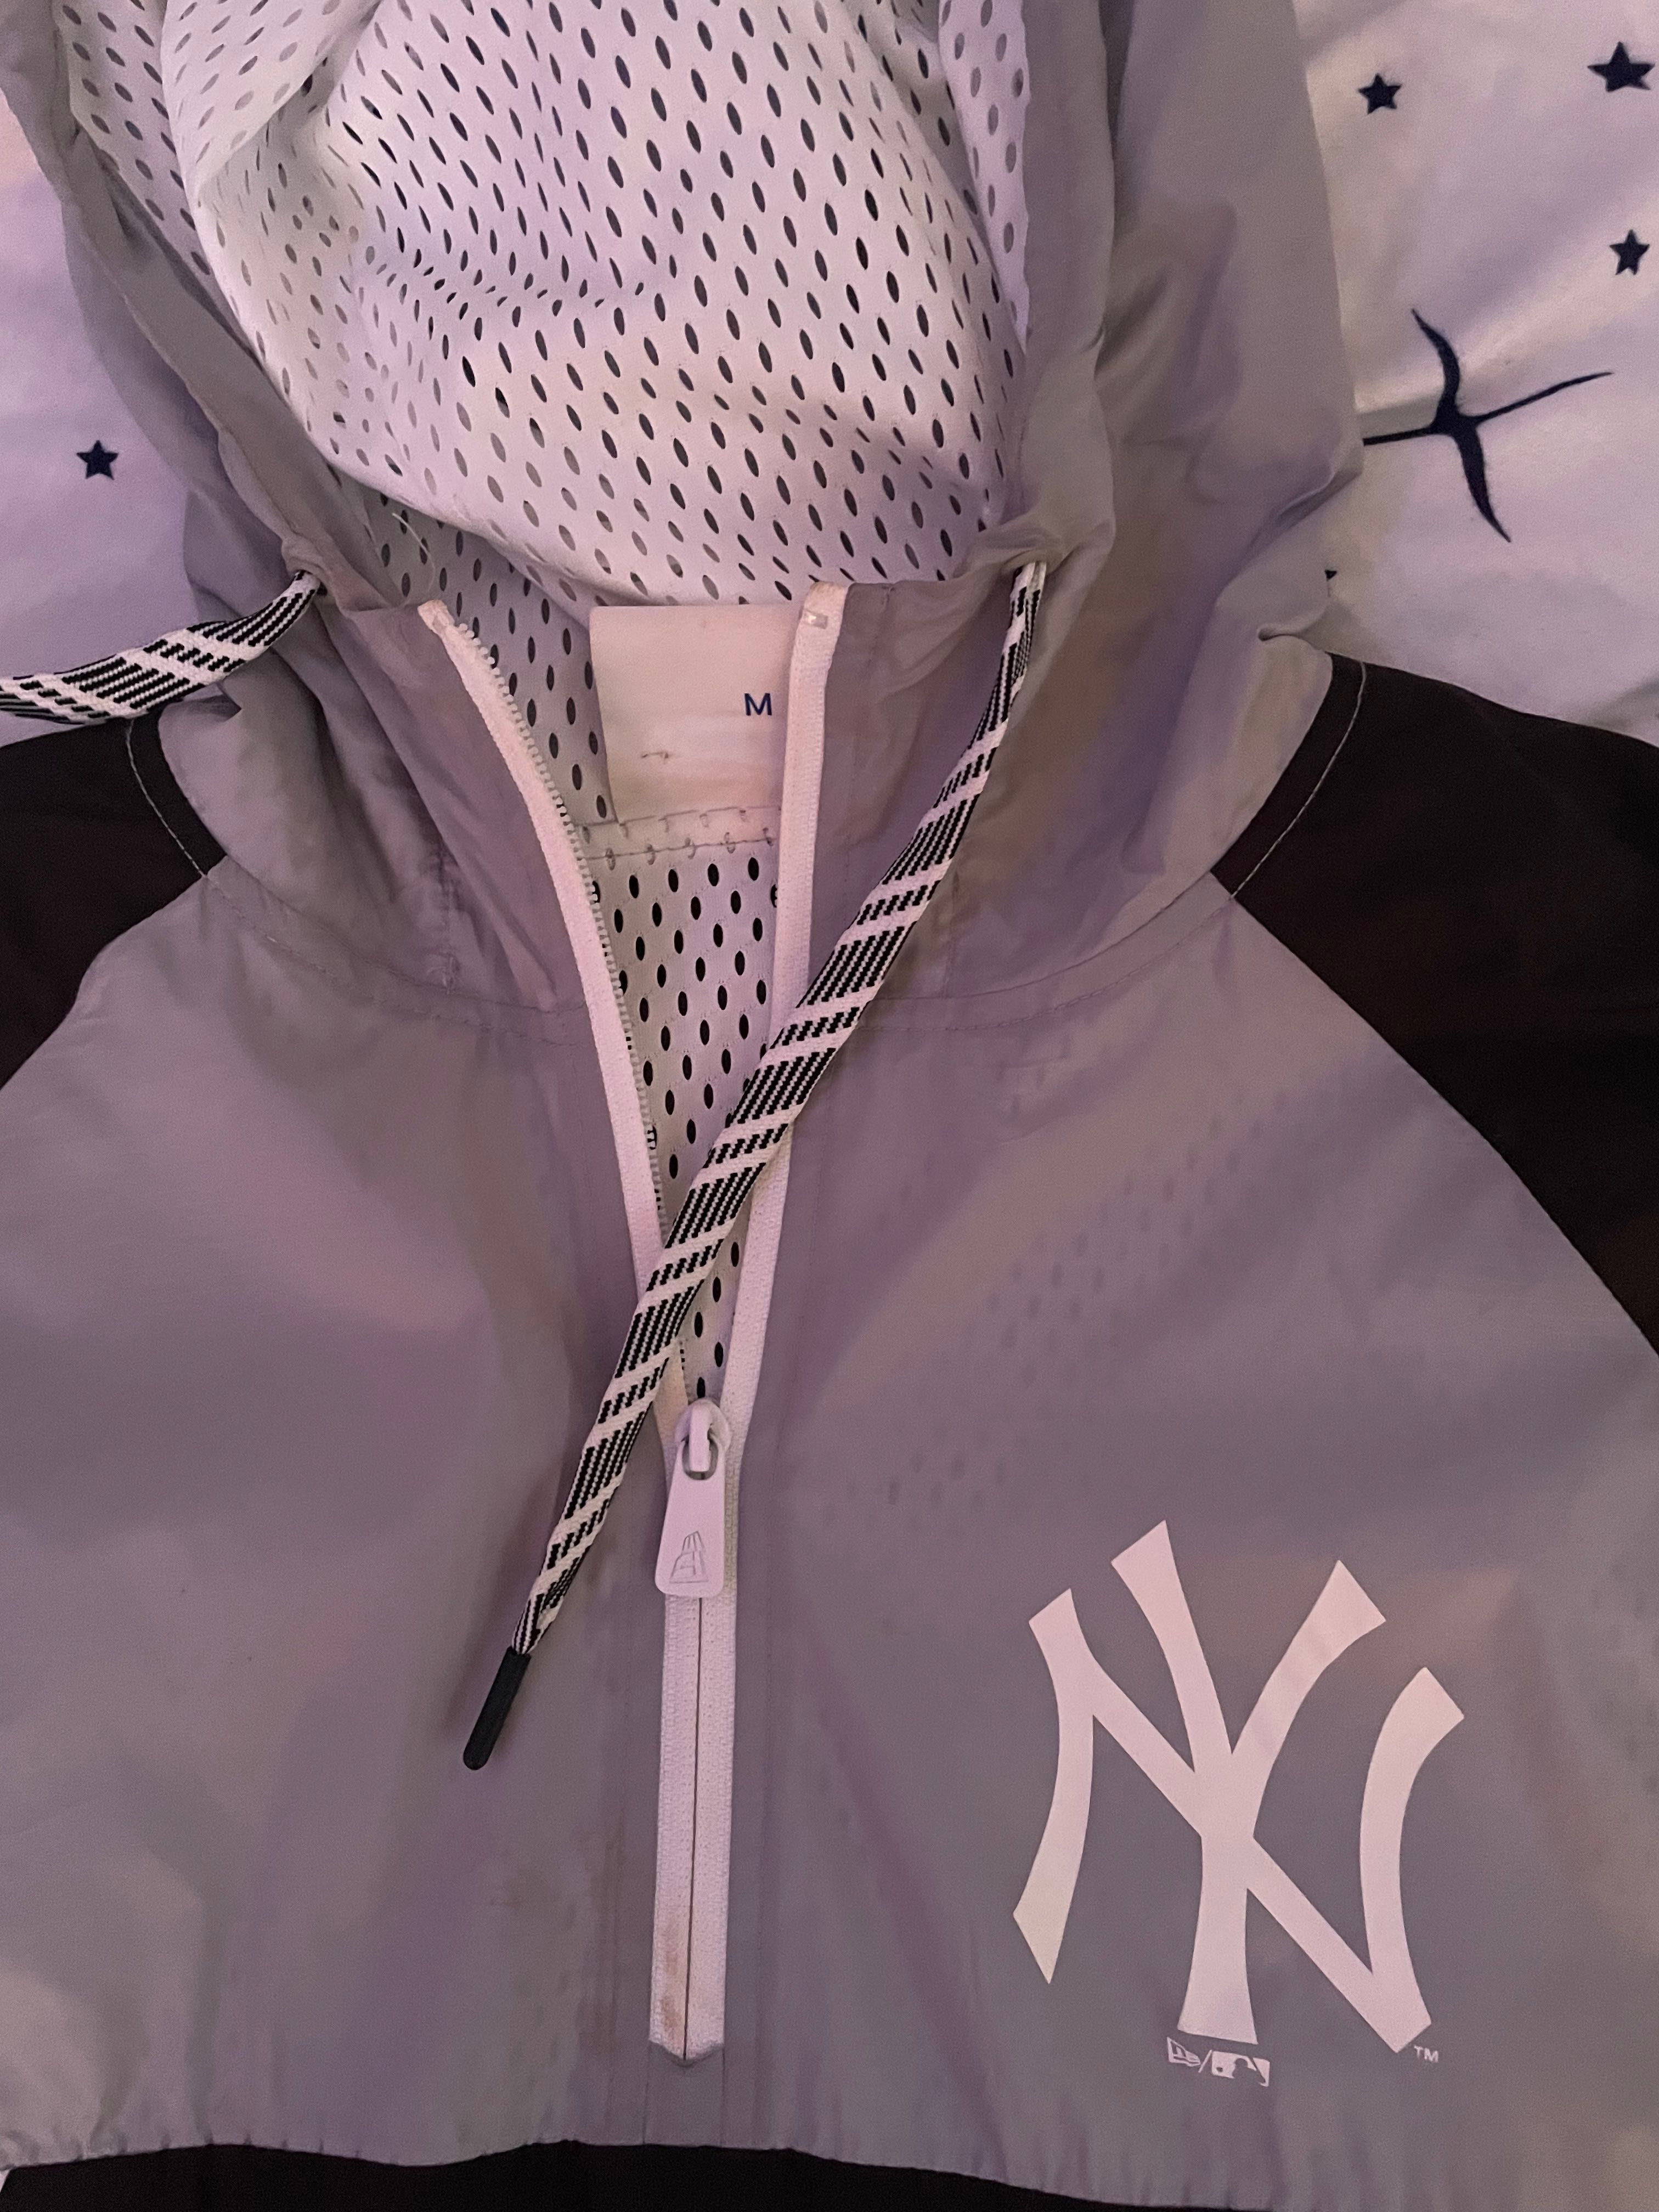 Vand jacheta de fas New Era Yankees